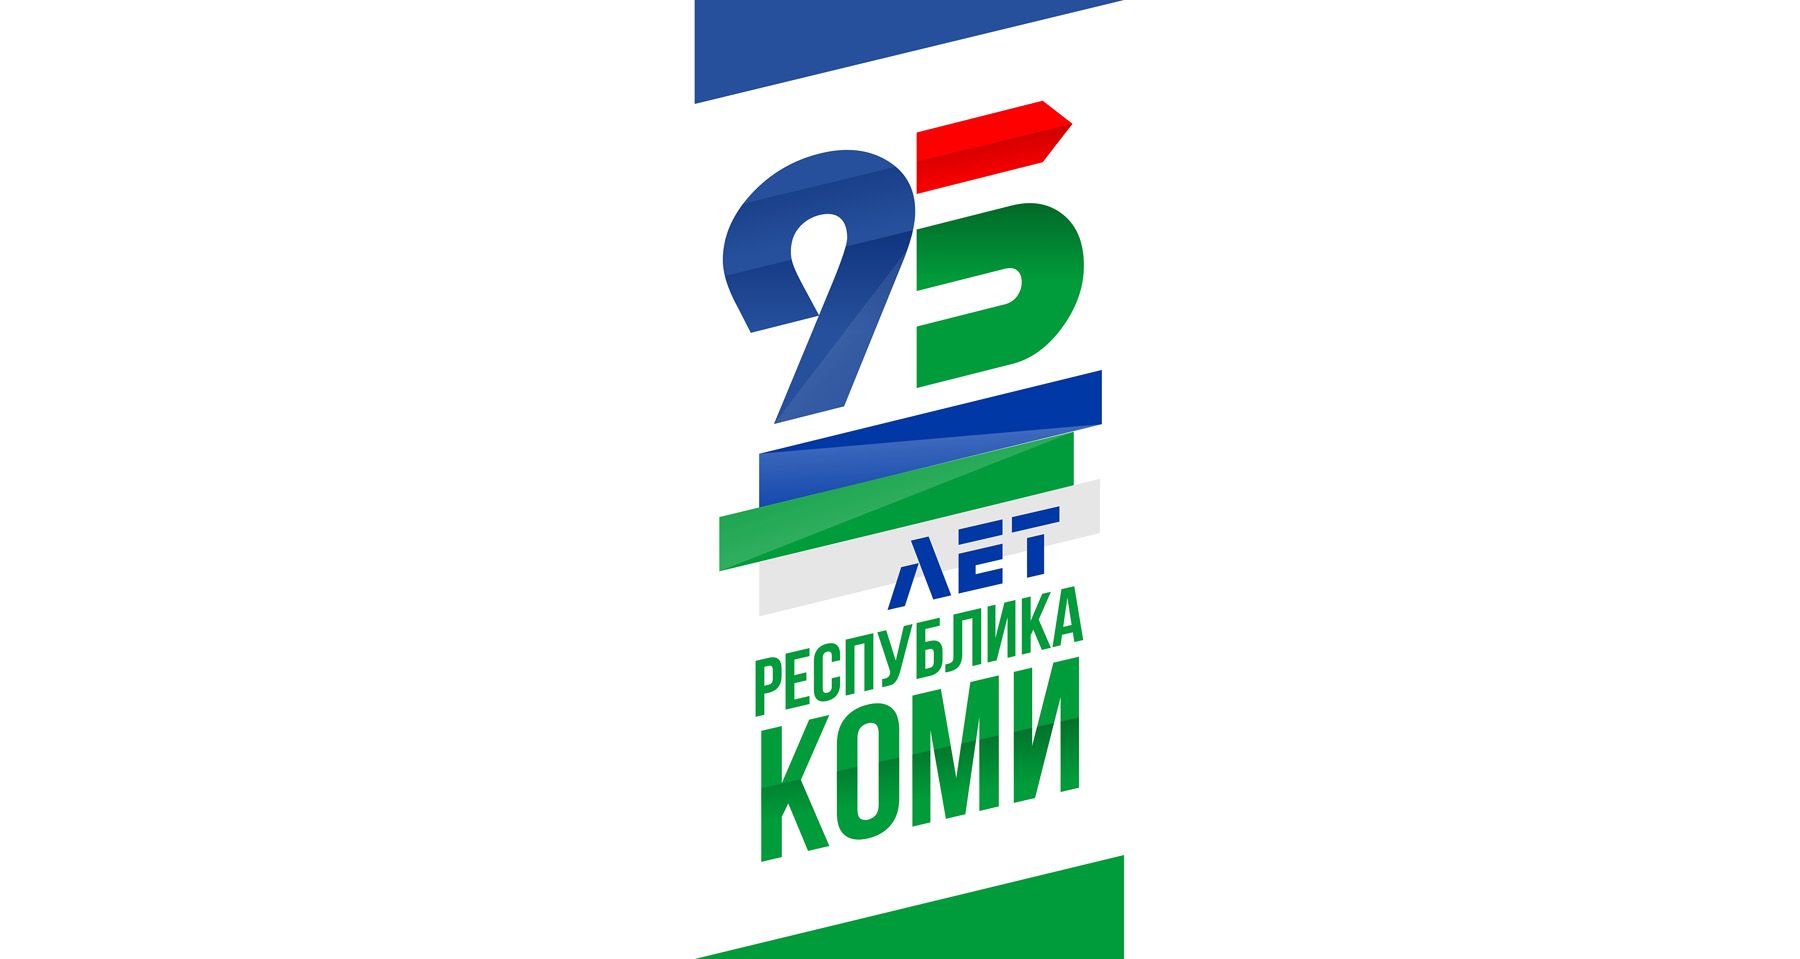 Лого и фирменный стиль для 95 лет Республике Коми  - дизайнер BulatBZ